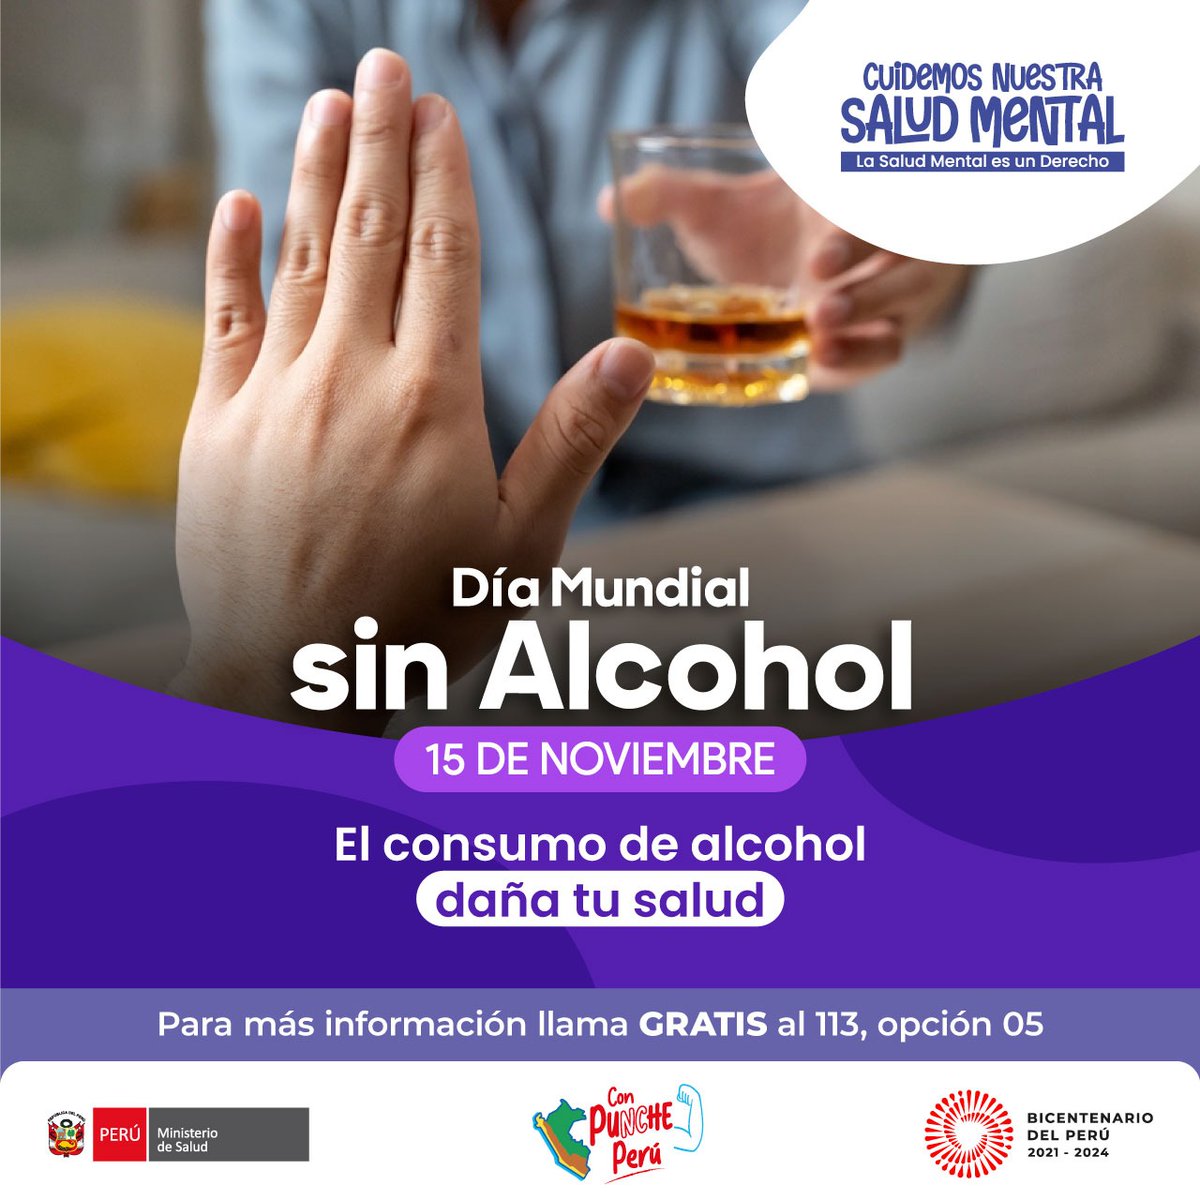 🚫🍷 Hoy, en el #DíaMundialSinAlcohol, recordemos su impacto en la salud y en la sociedad. Promovamos bienestar, prevengamos violencia y apoyemos la recuperación. #CuidemosNuestraSaludMental 💪🧠